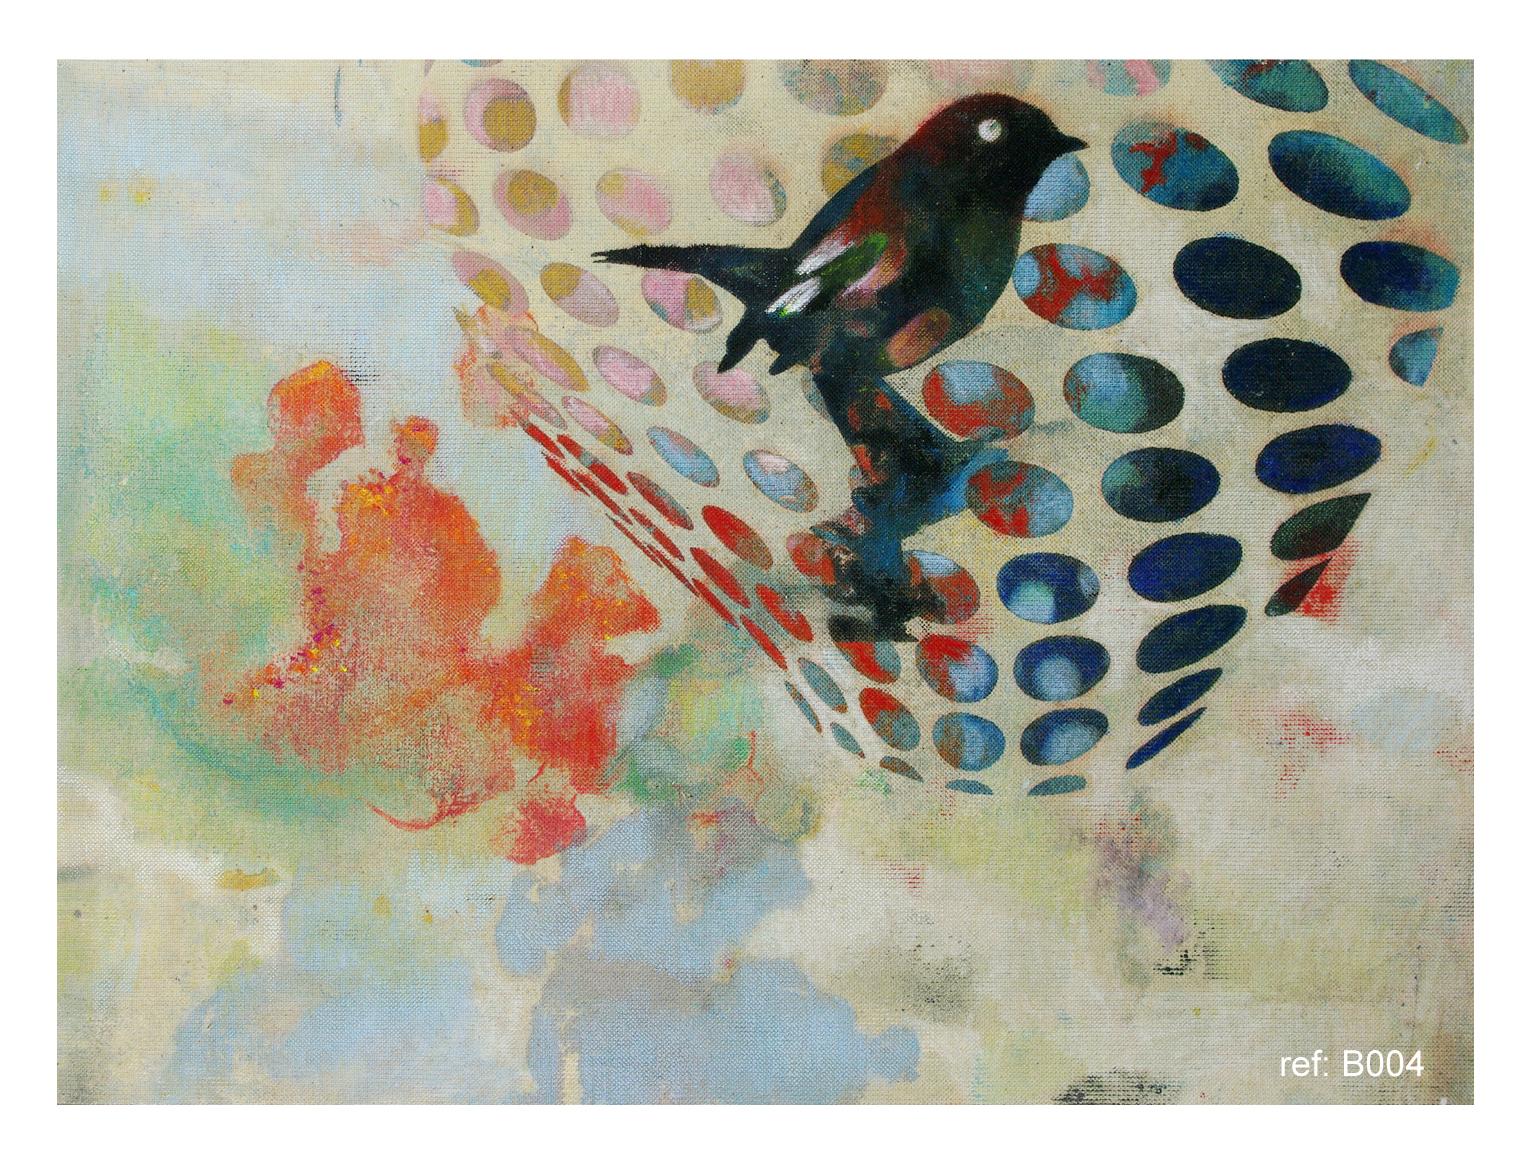 Vogele 019- Zeitgenössisch, abstrakt, expressionistisch, modern, Straßenkunst, surrealistisch – Mixed Media Art von Francisco Nicolás